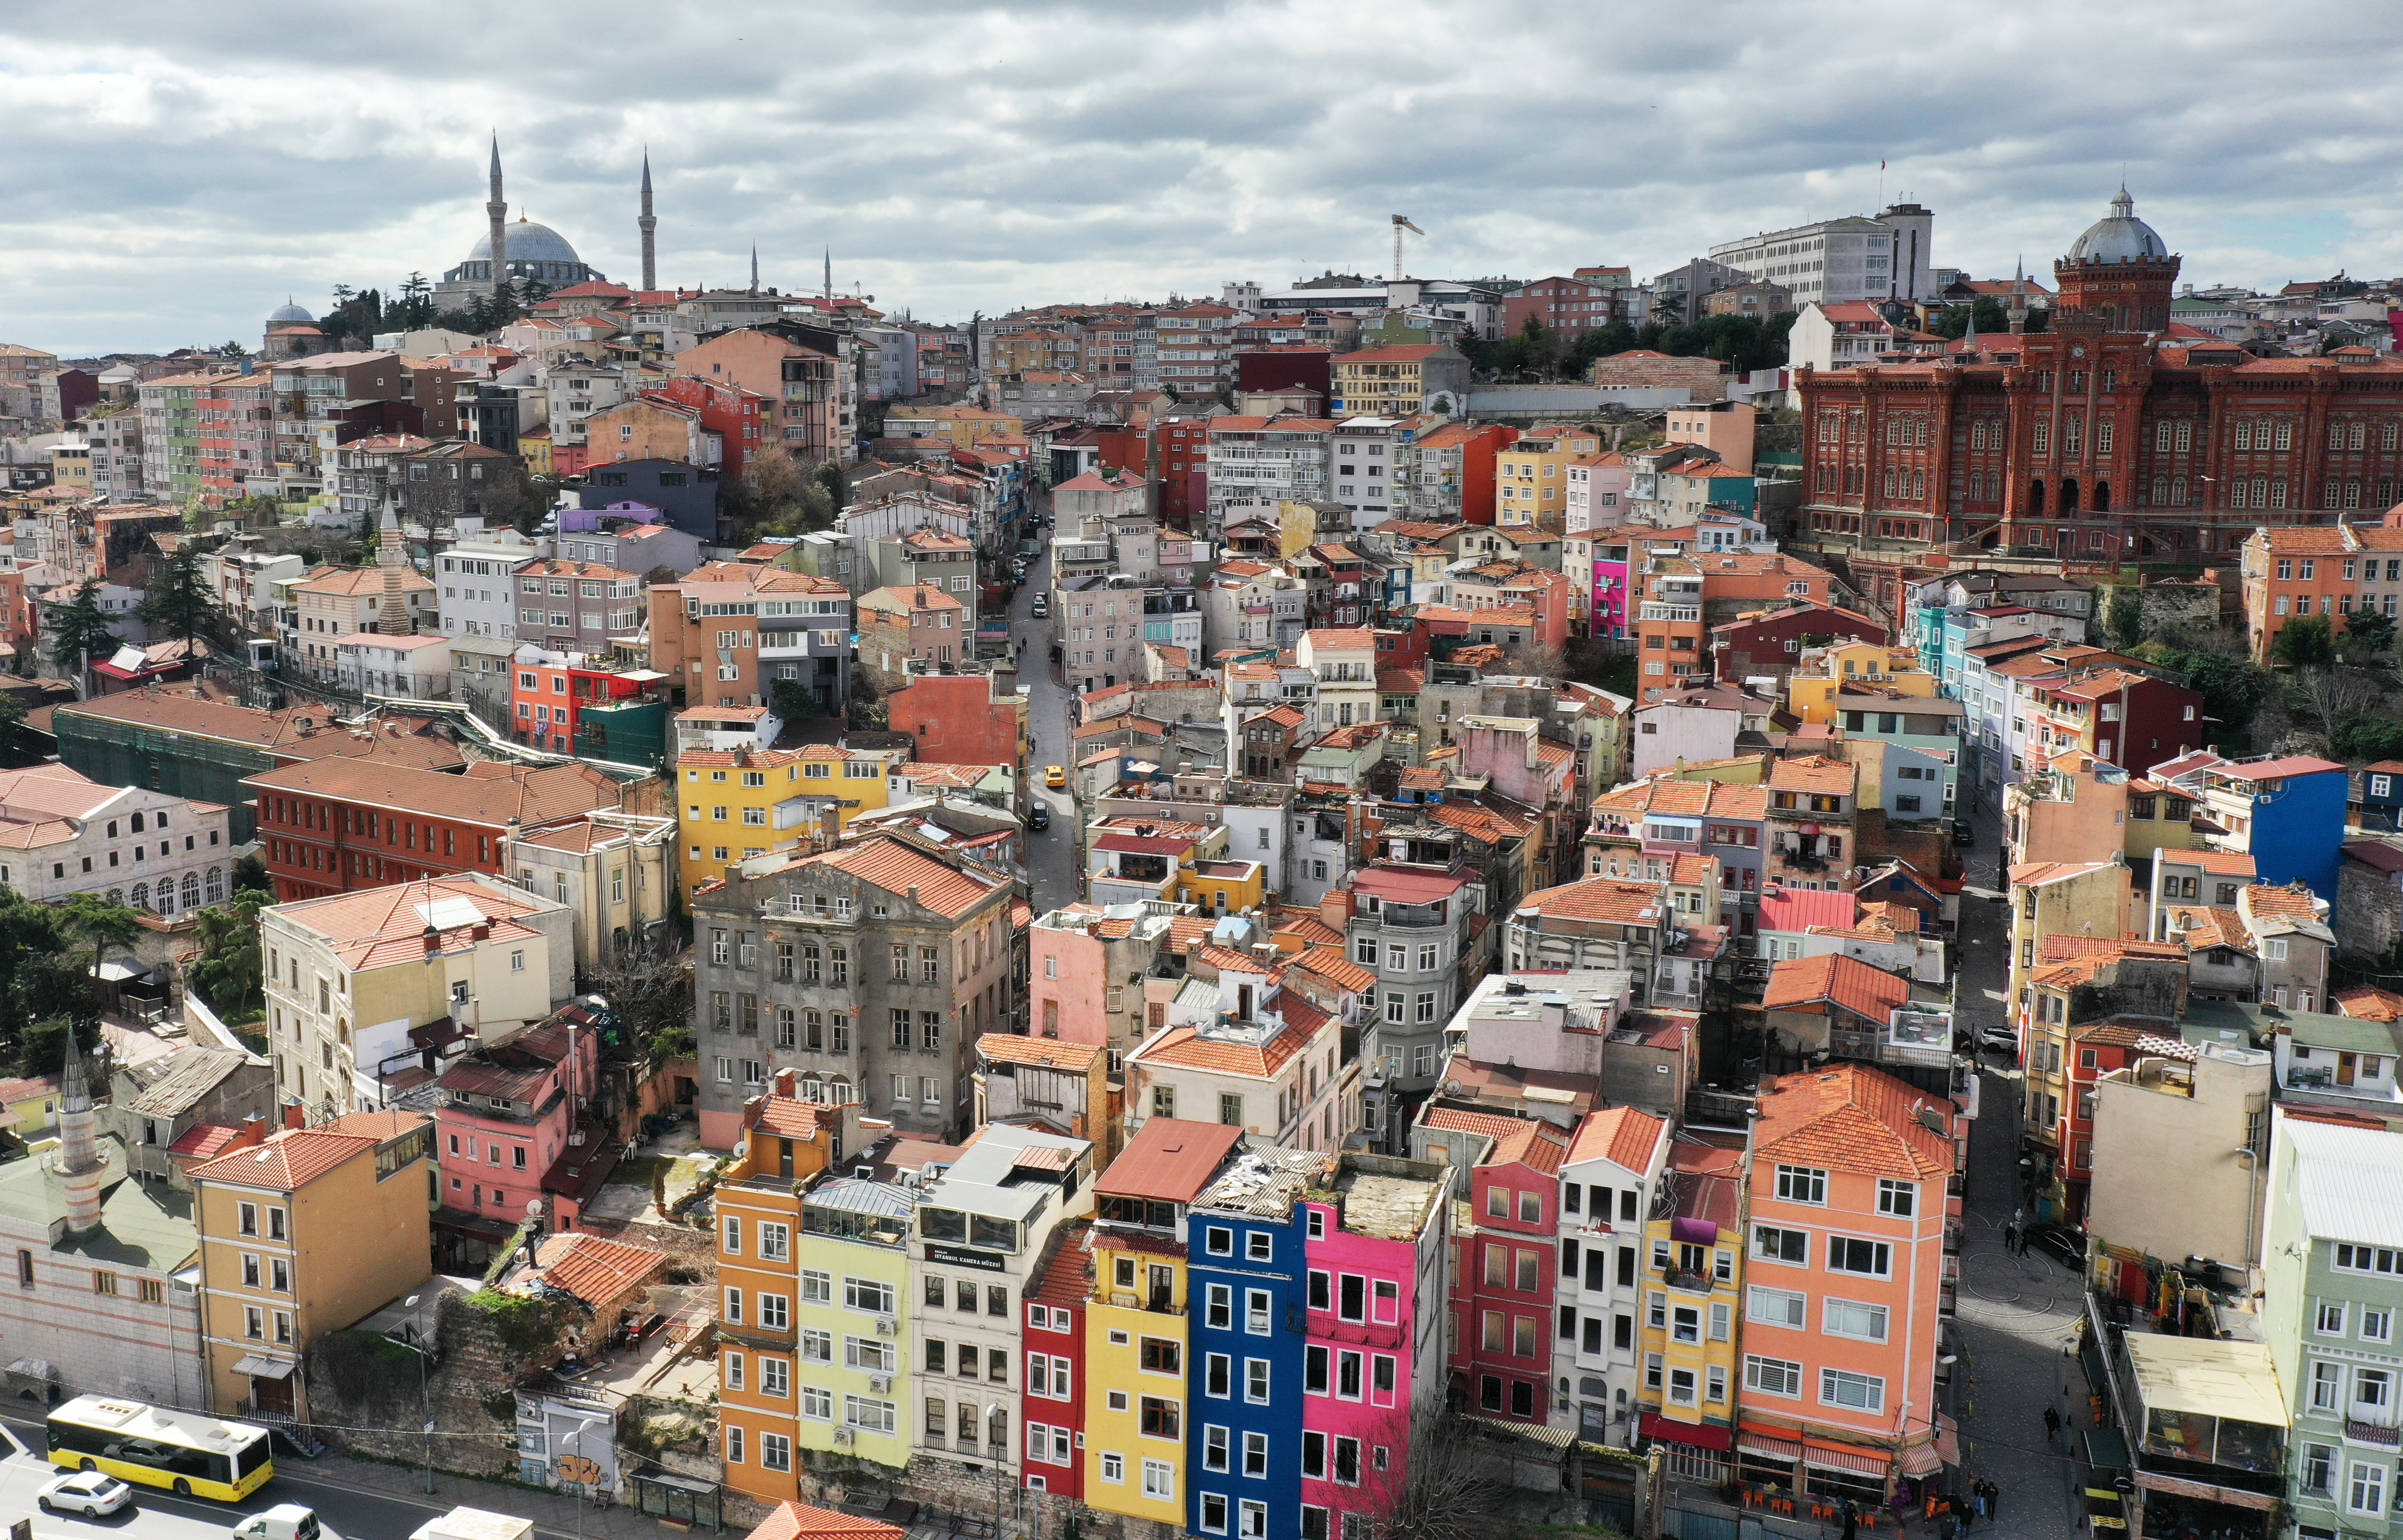 도시재생을 통해 이스탄불의 ‘핫플’로 떠오른 발라트 전경. 작고 예쁜 카페와 공방 등이 많아 인증샷을 남기려는 젊은이들이 많이 찾는다.